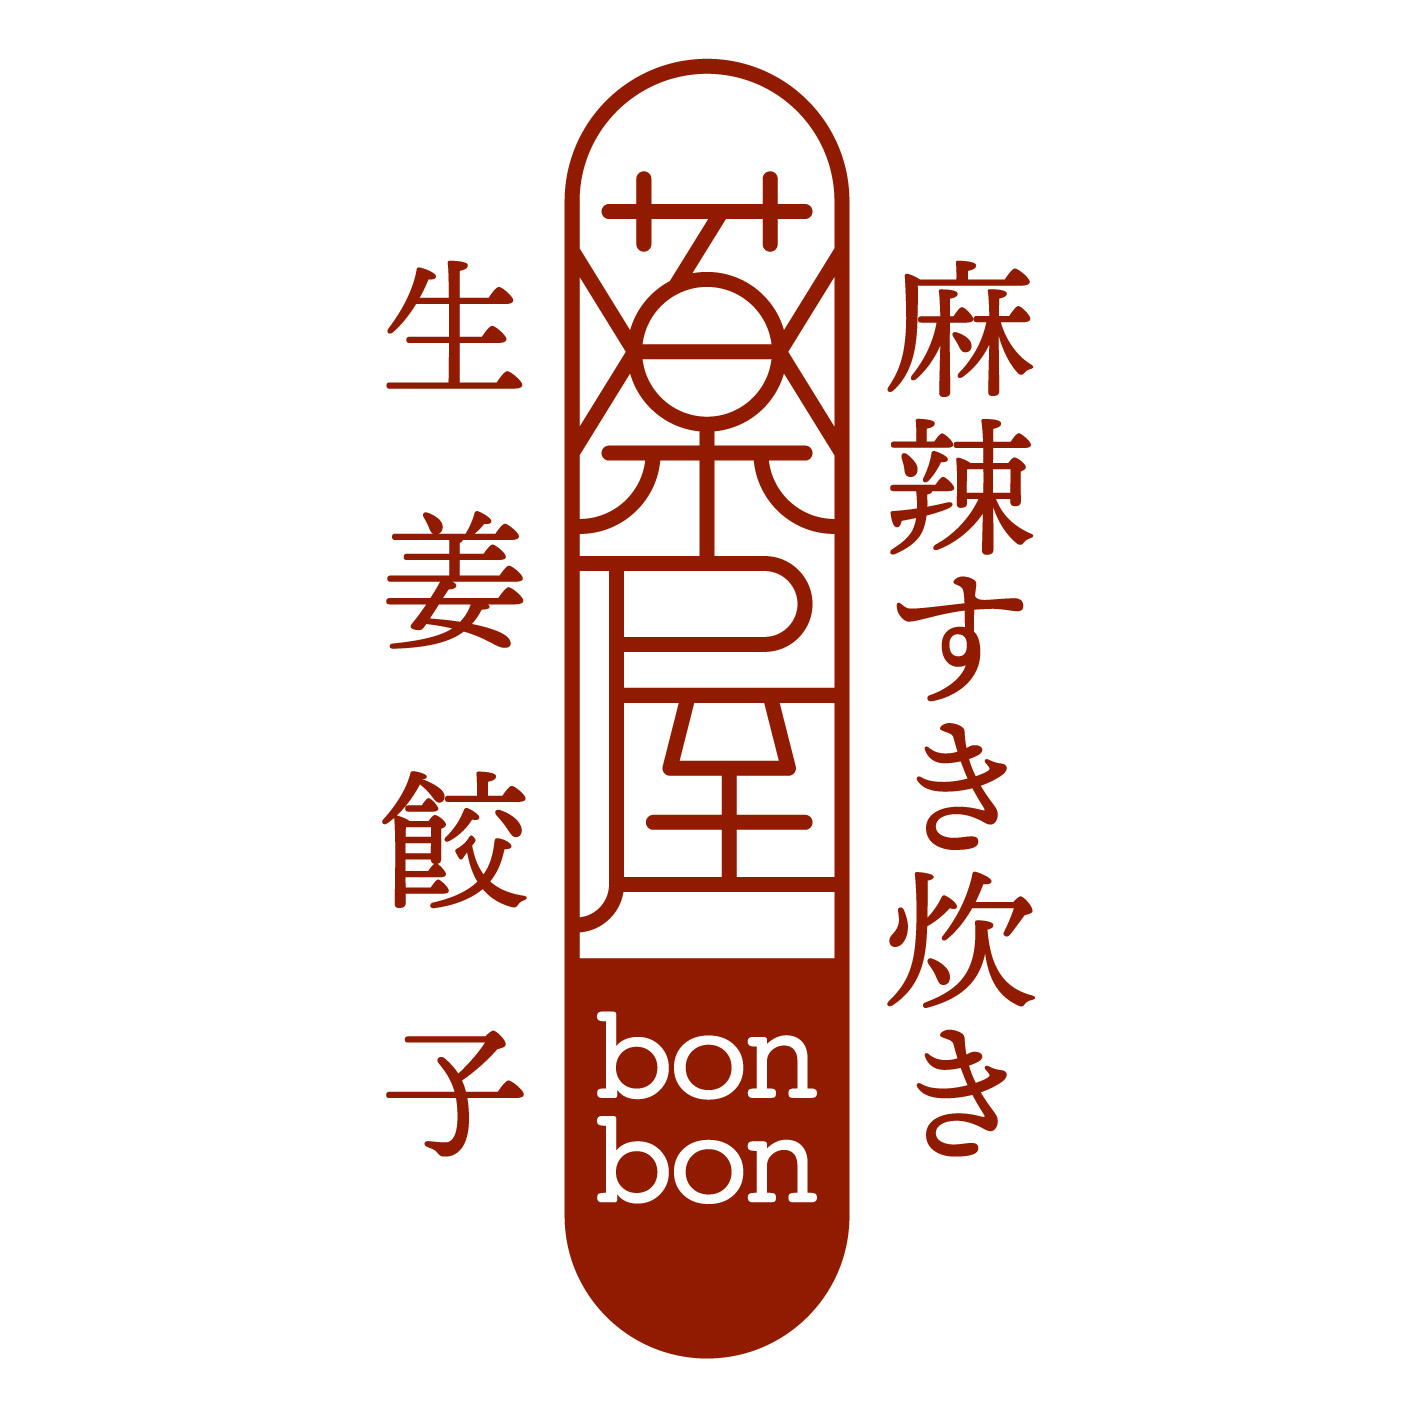 【9月1日OPEN】麻辣すき炊き・生姜餃子 薬屋bonbon